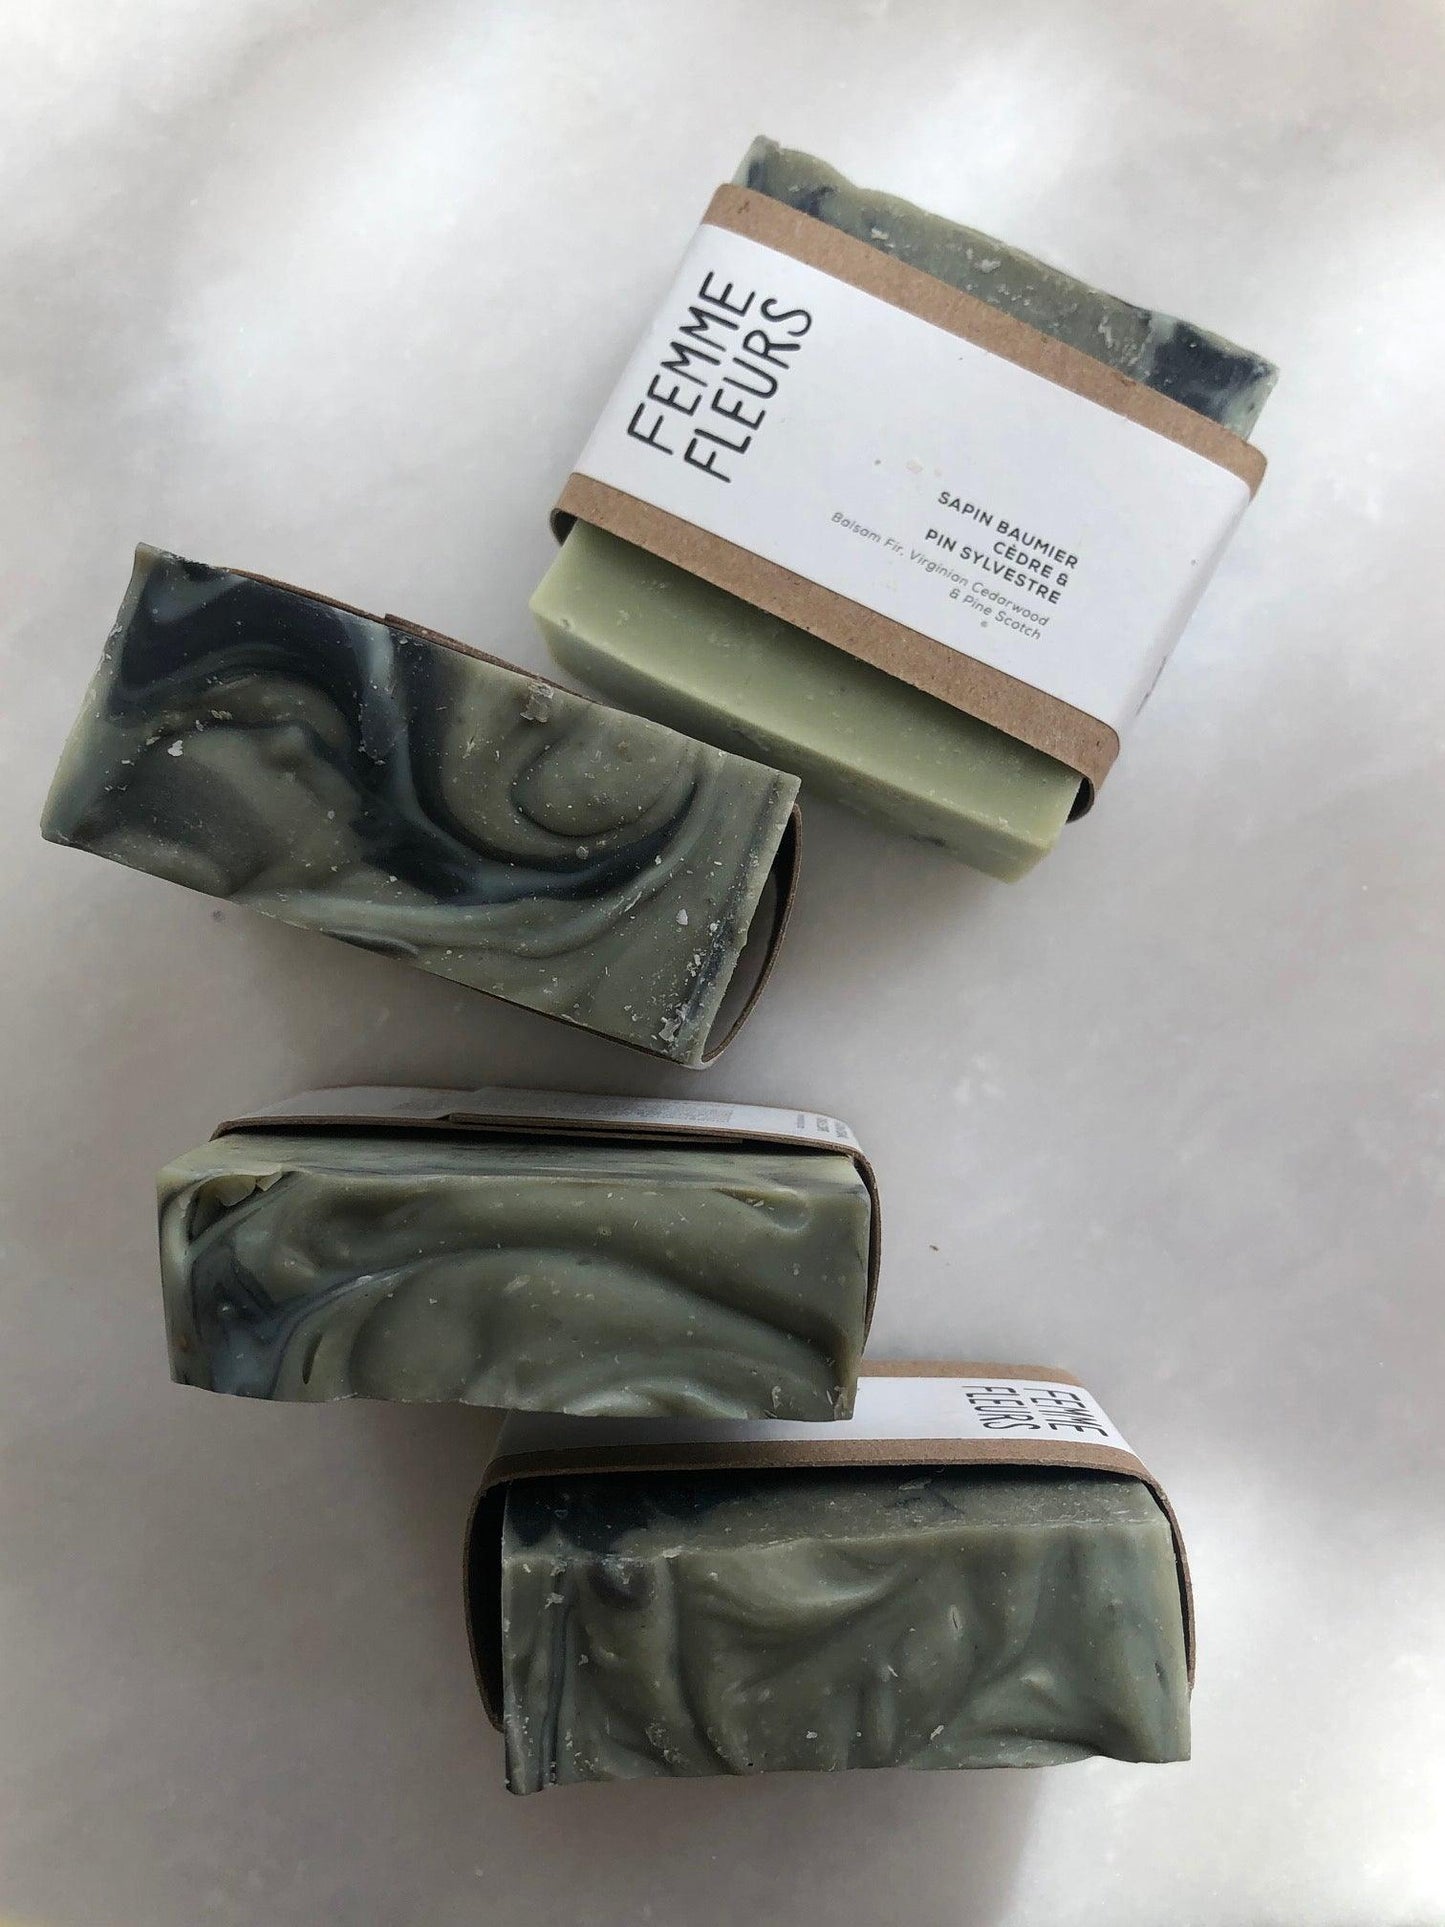 Balsam fir, cedar & Scots pine soaps